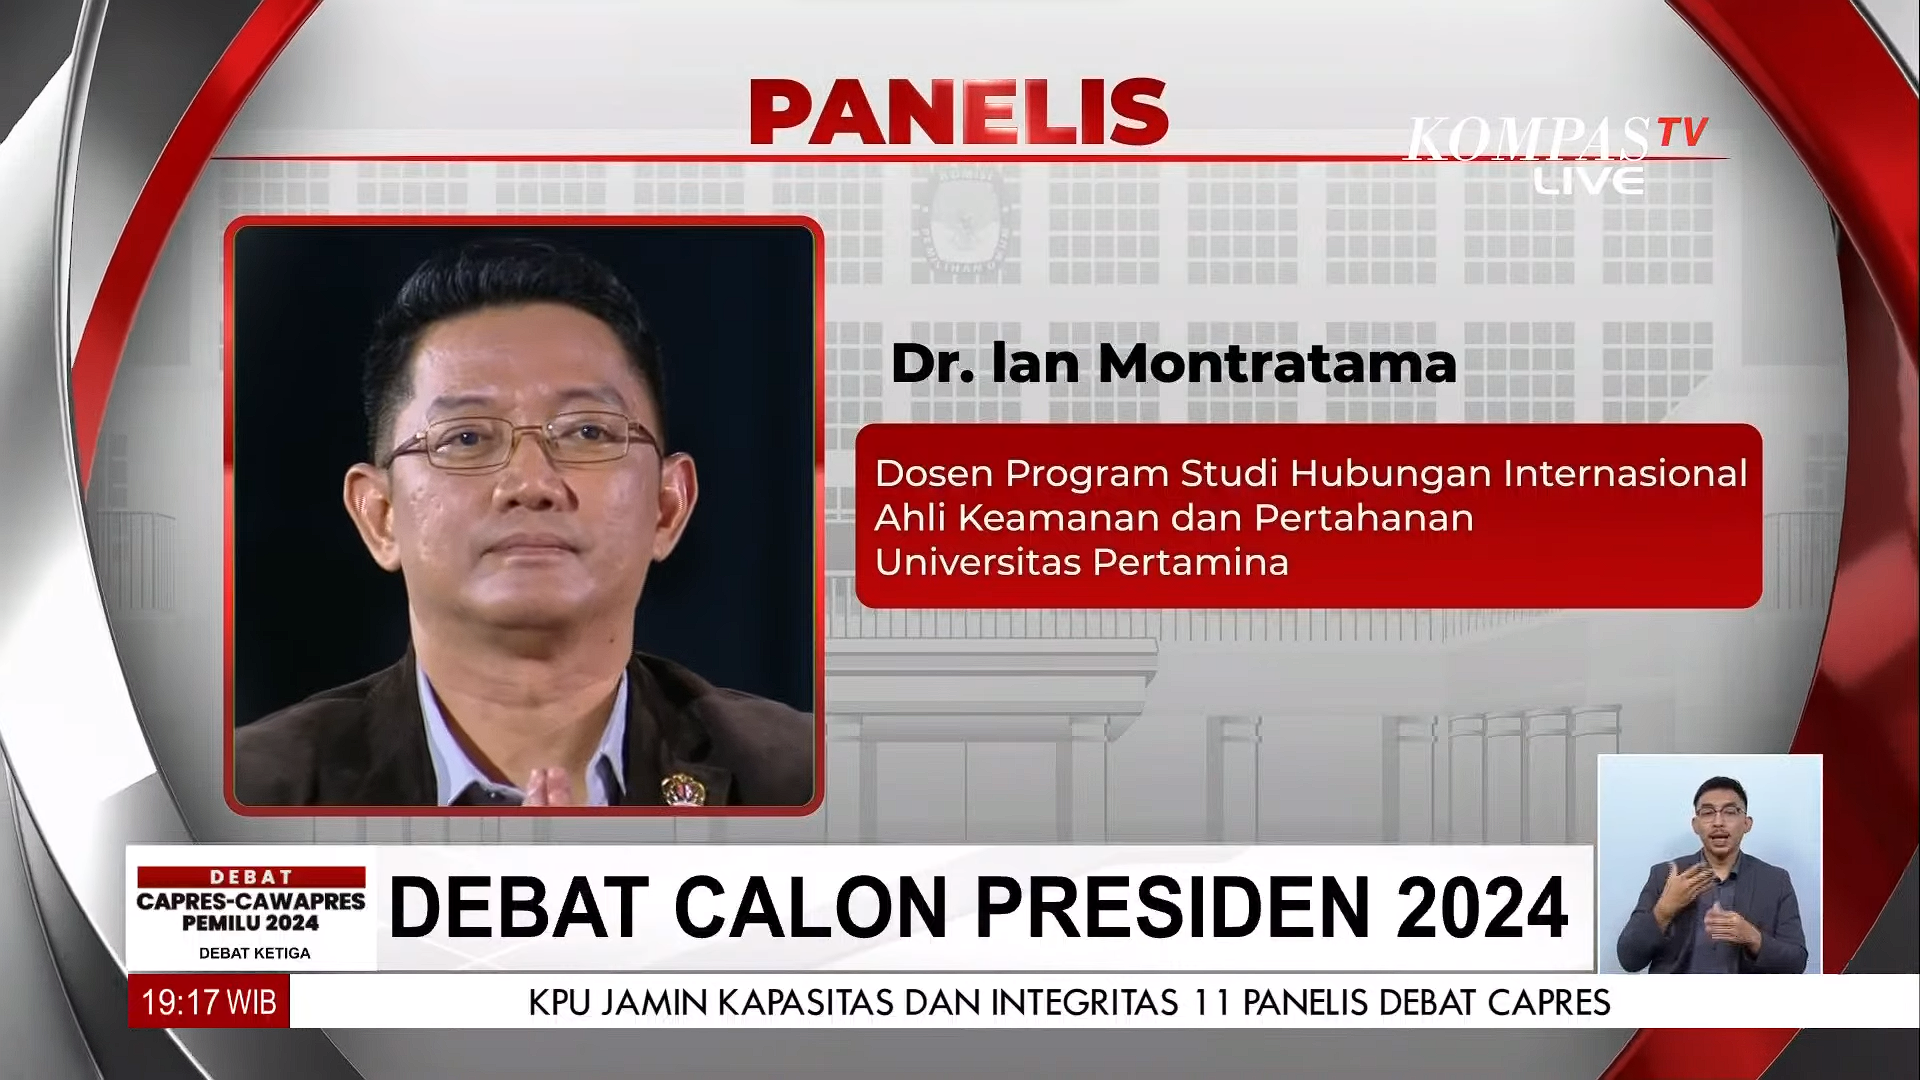 Partisipasi Dr. Ian Montratama, Dosen Hubungan Internasional Universitas Pertamina, sebagai Panelis dalam Debat Calon Presiden 2024